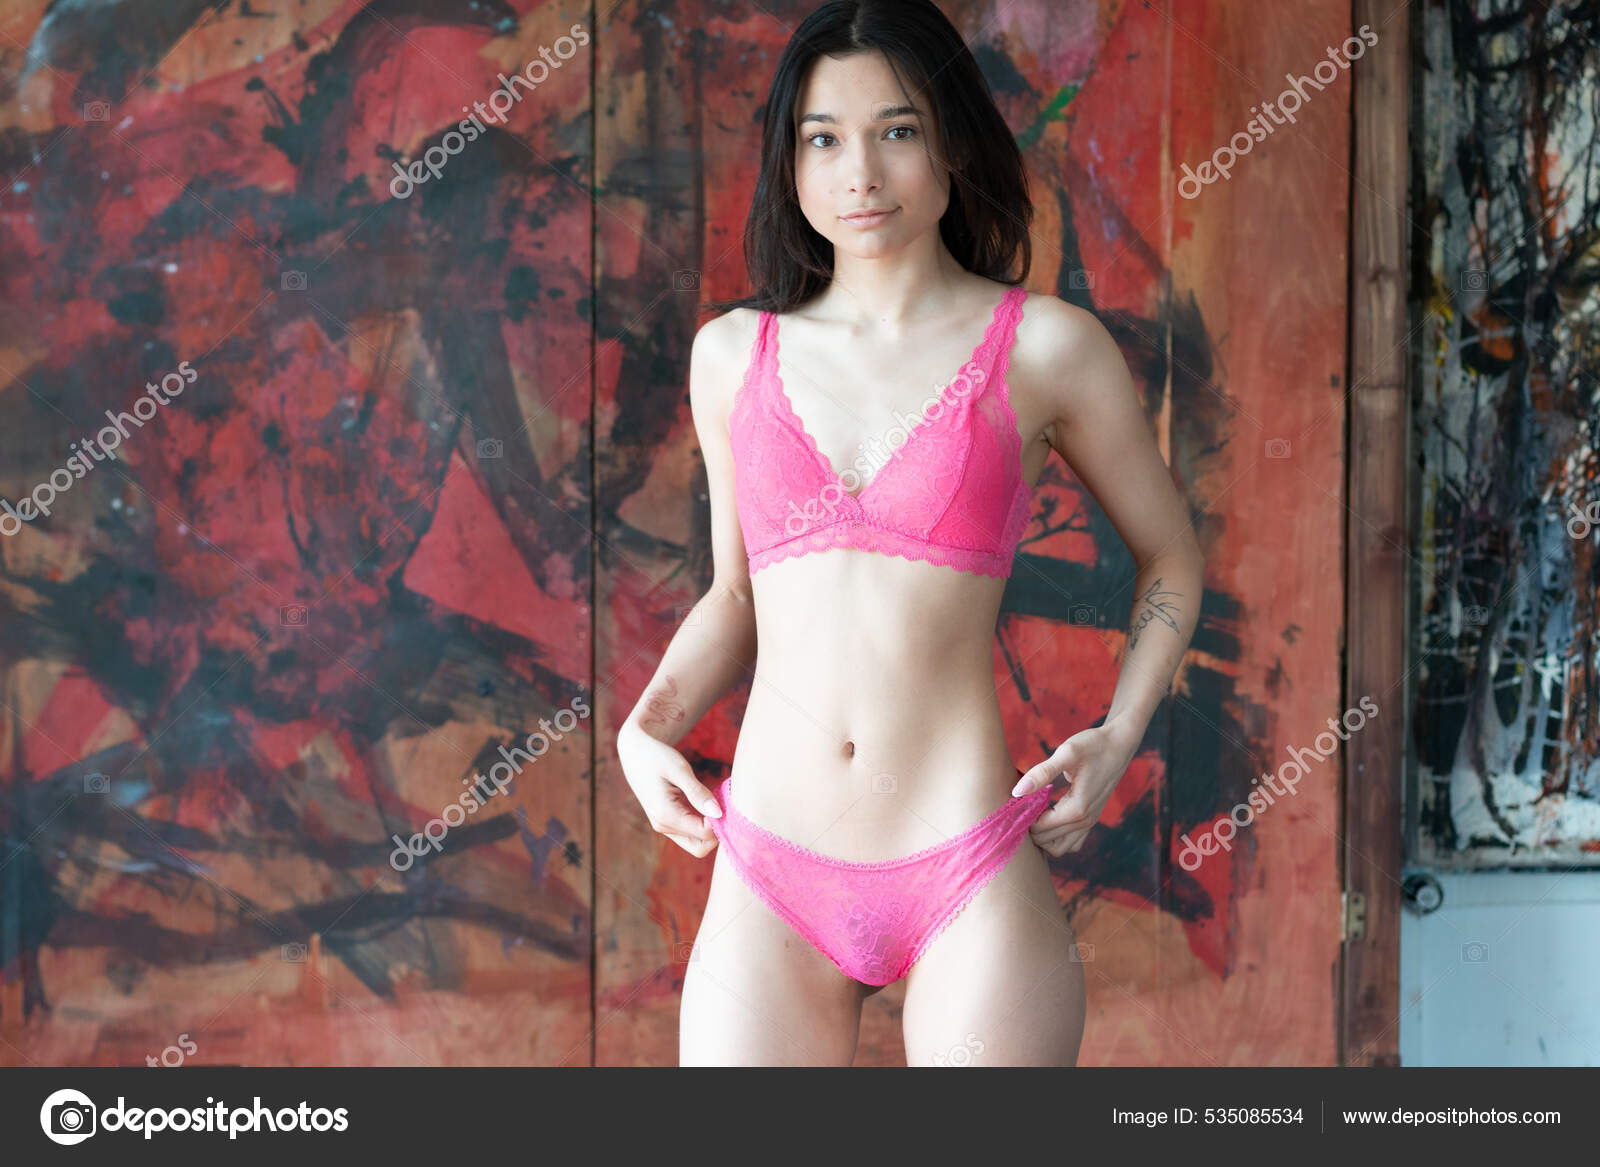 https://st.depositphotos.com/10086424/53508/i/1600/depositphotos_535085534-stock-photo-young-beautiful-woman-posing-red.jpg